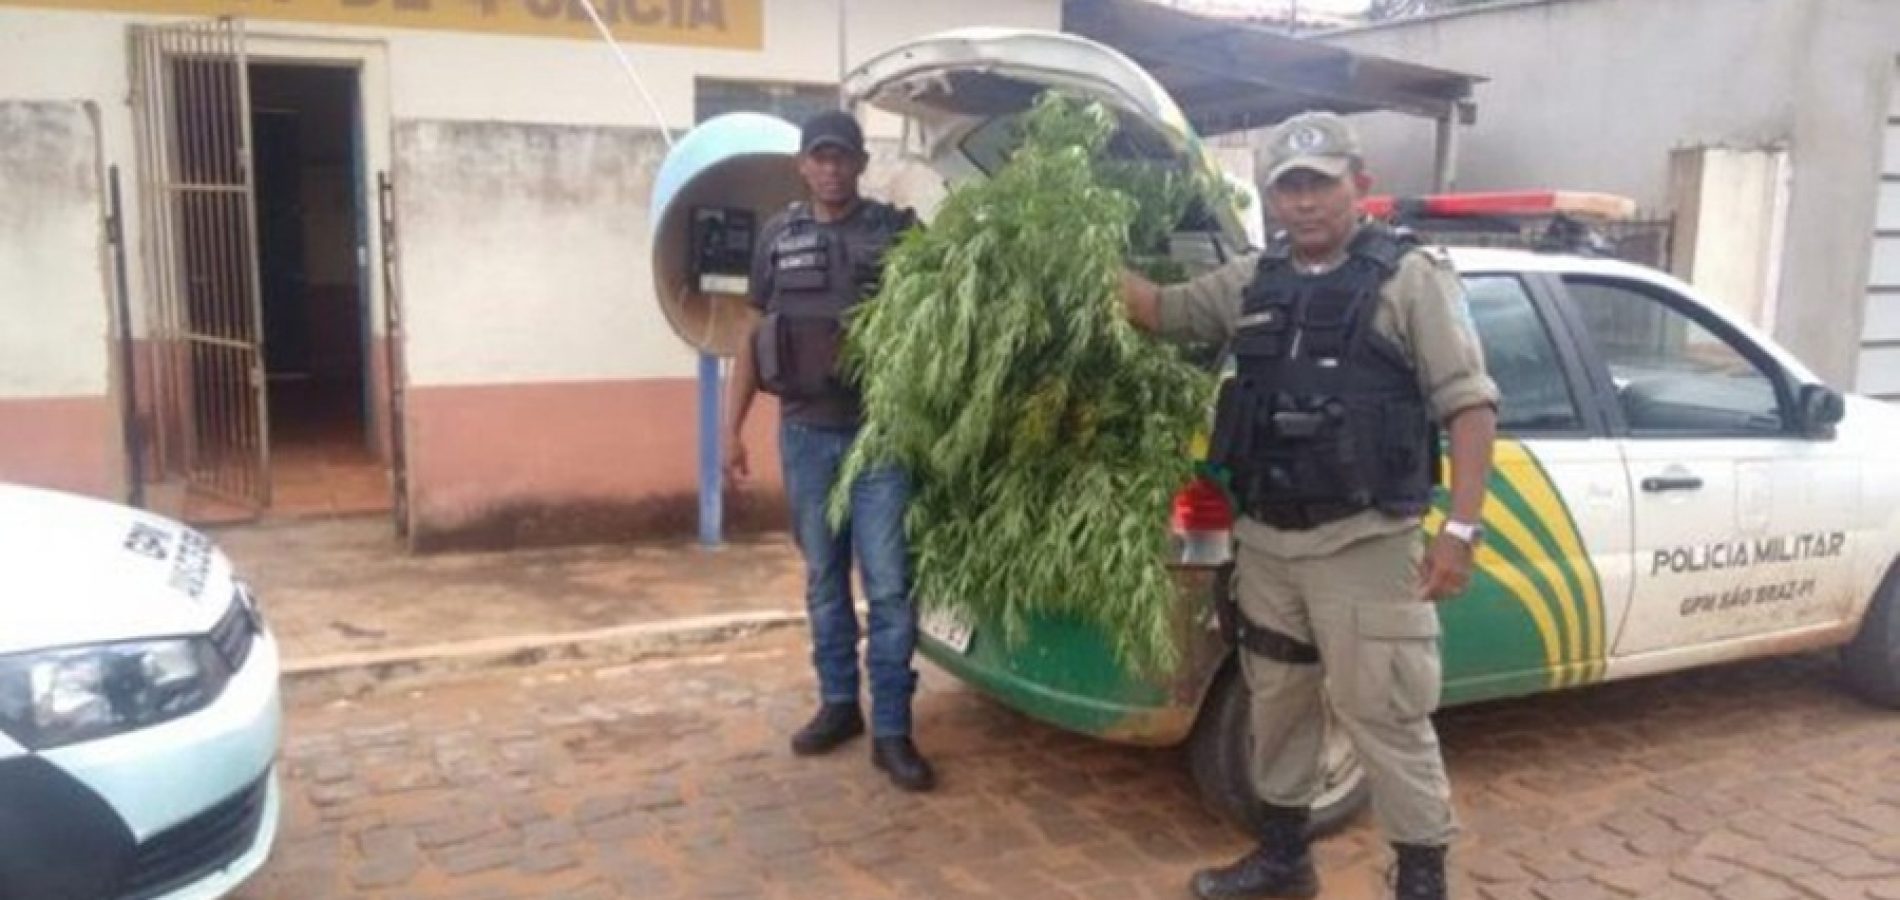 Agricultor preso com plantação de maconha no interior do Piauí diz que erva era pra fazer chá